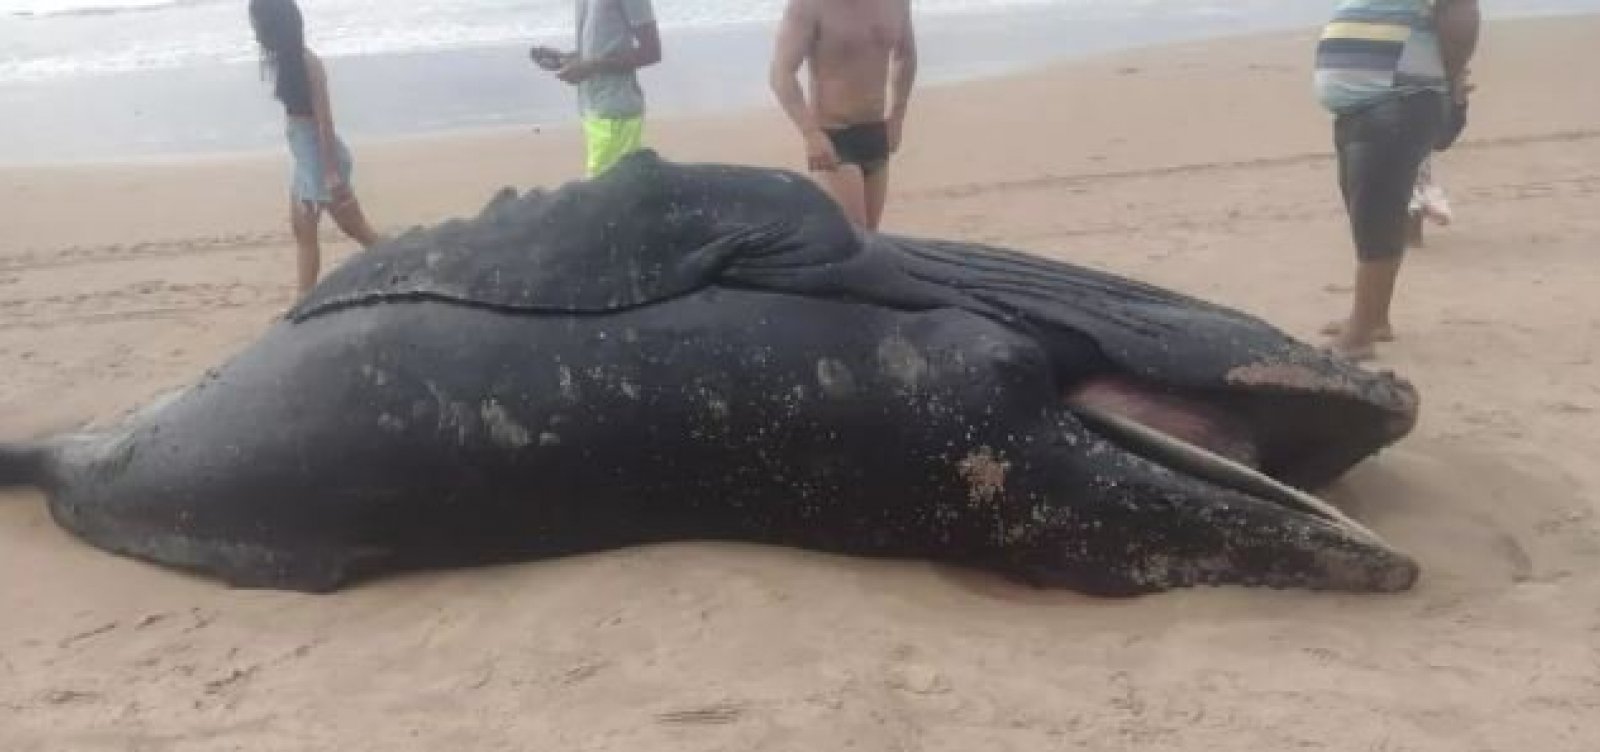 Filhote de baleia é encontrado morto em praia na Região Metropolitana de Salvador